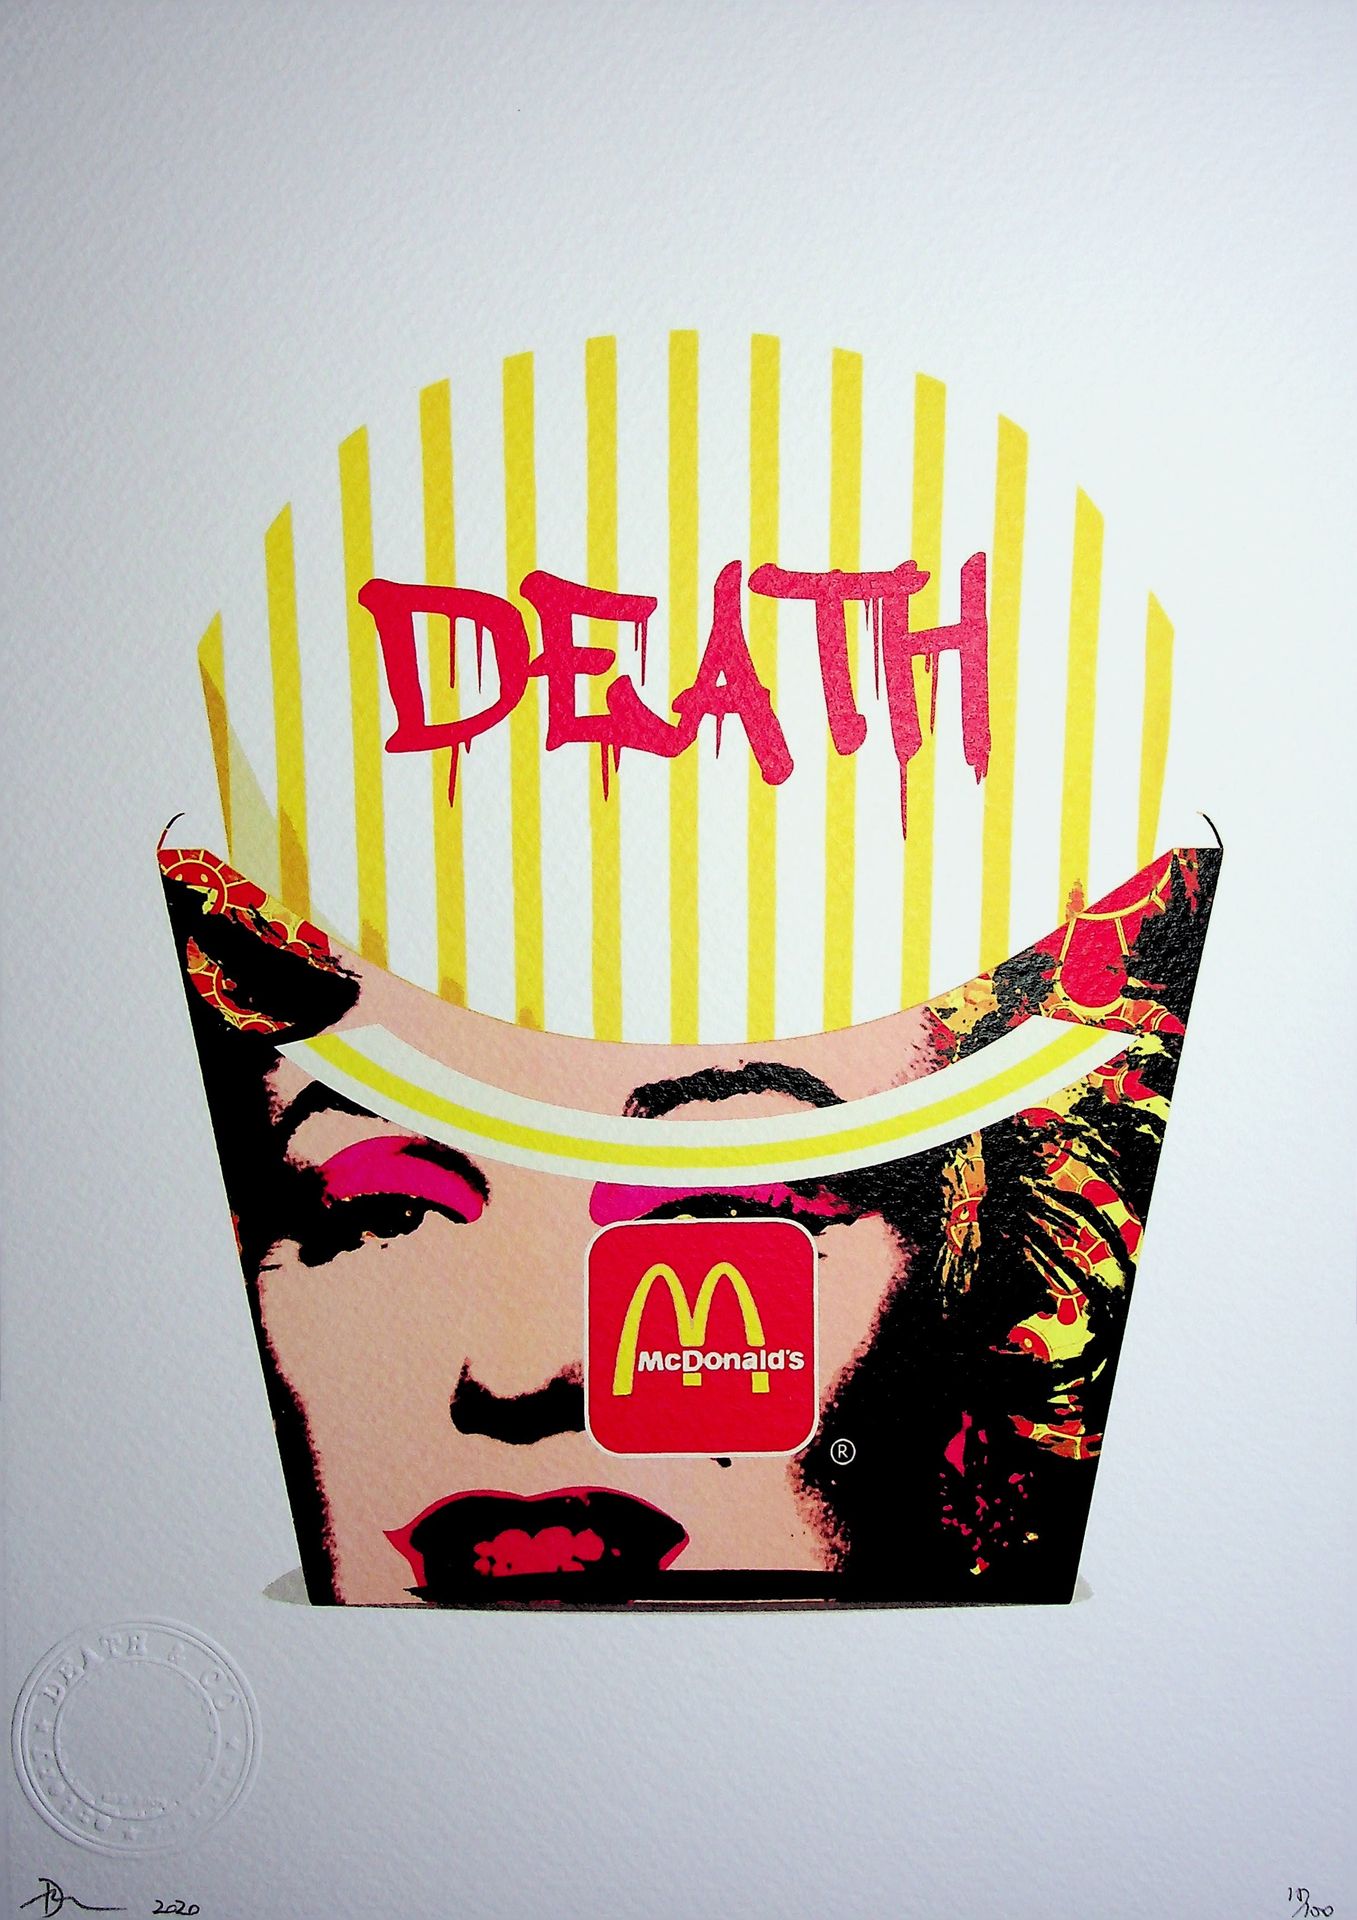 Death NYC 纽约市的死亡

麦当劳薯条与玛丽莲-门罗的关系

原创死亡纽约丝网版画

由艺术家亲笔签名

合理的 "AP"（艺术家的证明）。

尺寸 :&hellip;